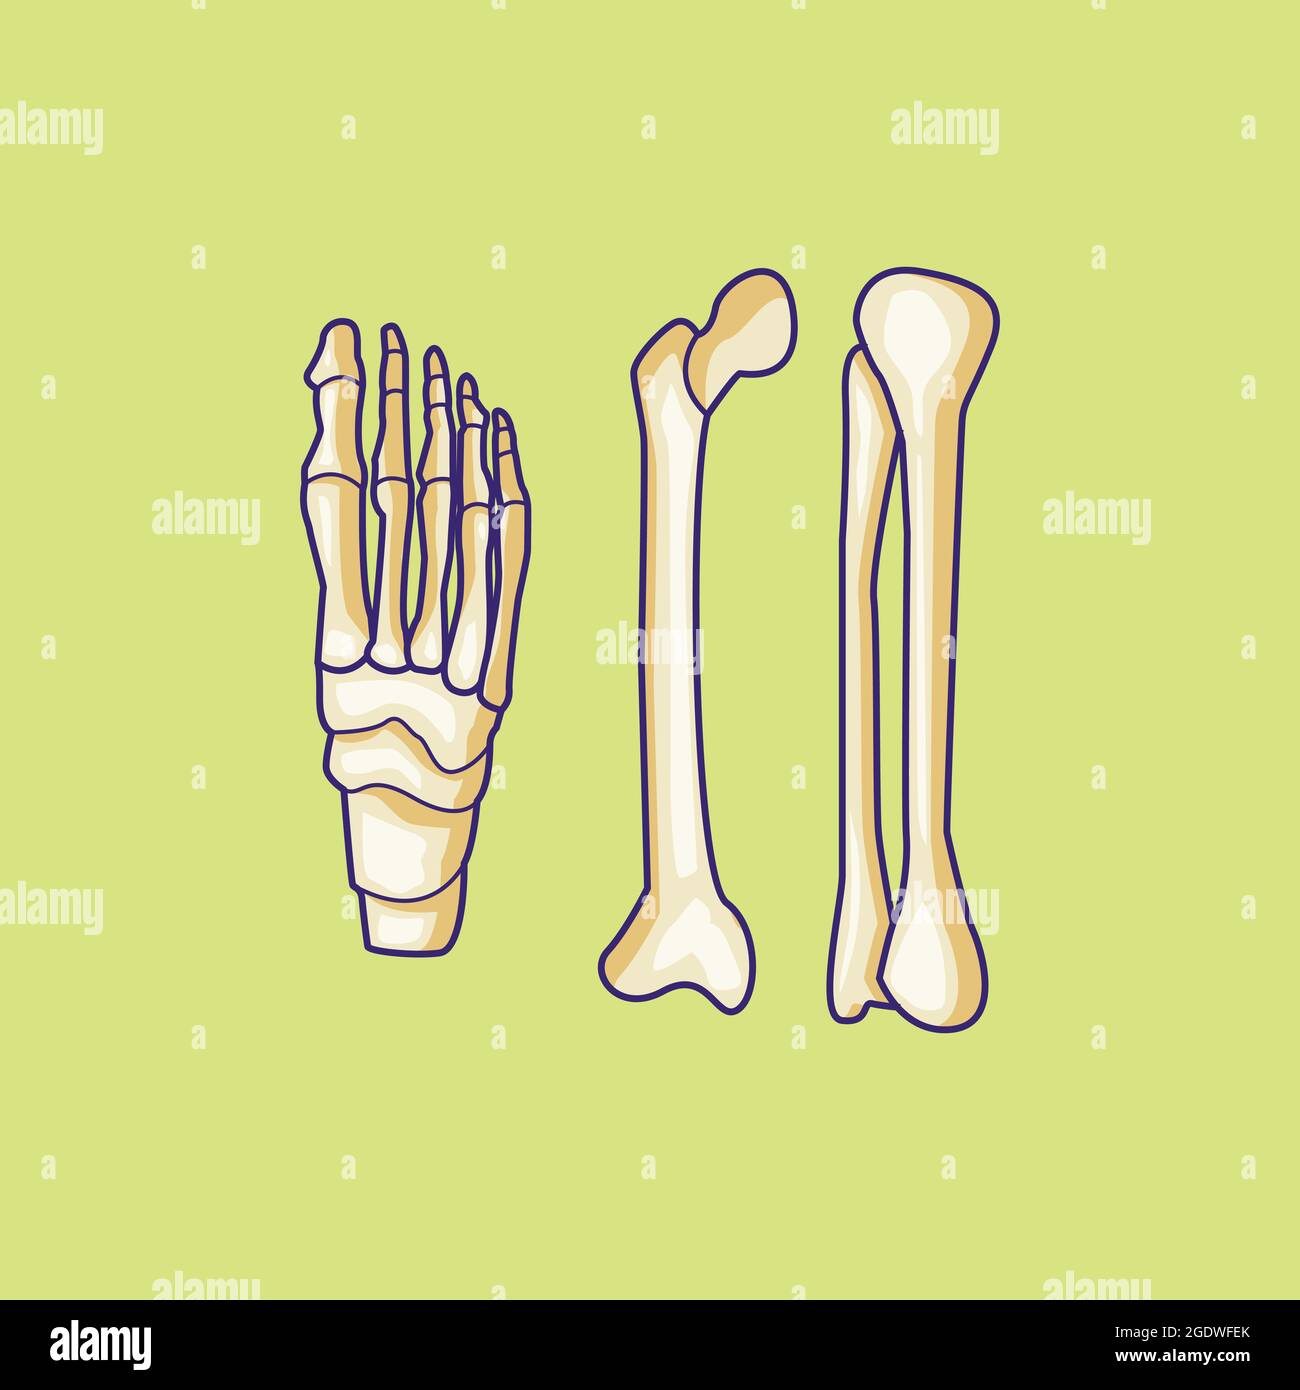 disegno isolato dell'osso del piede umano dell'illustrazione del materiale vettoriale dell'osso del piede Illustrazione Vettoriale